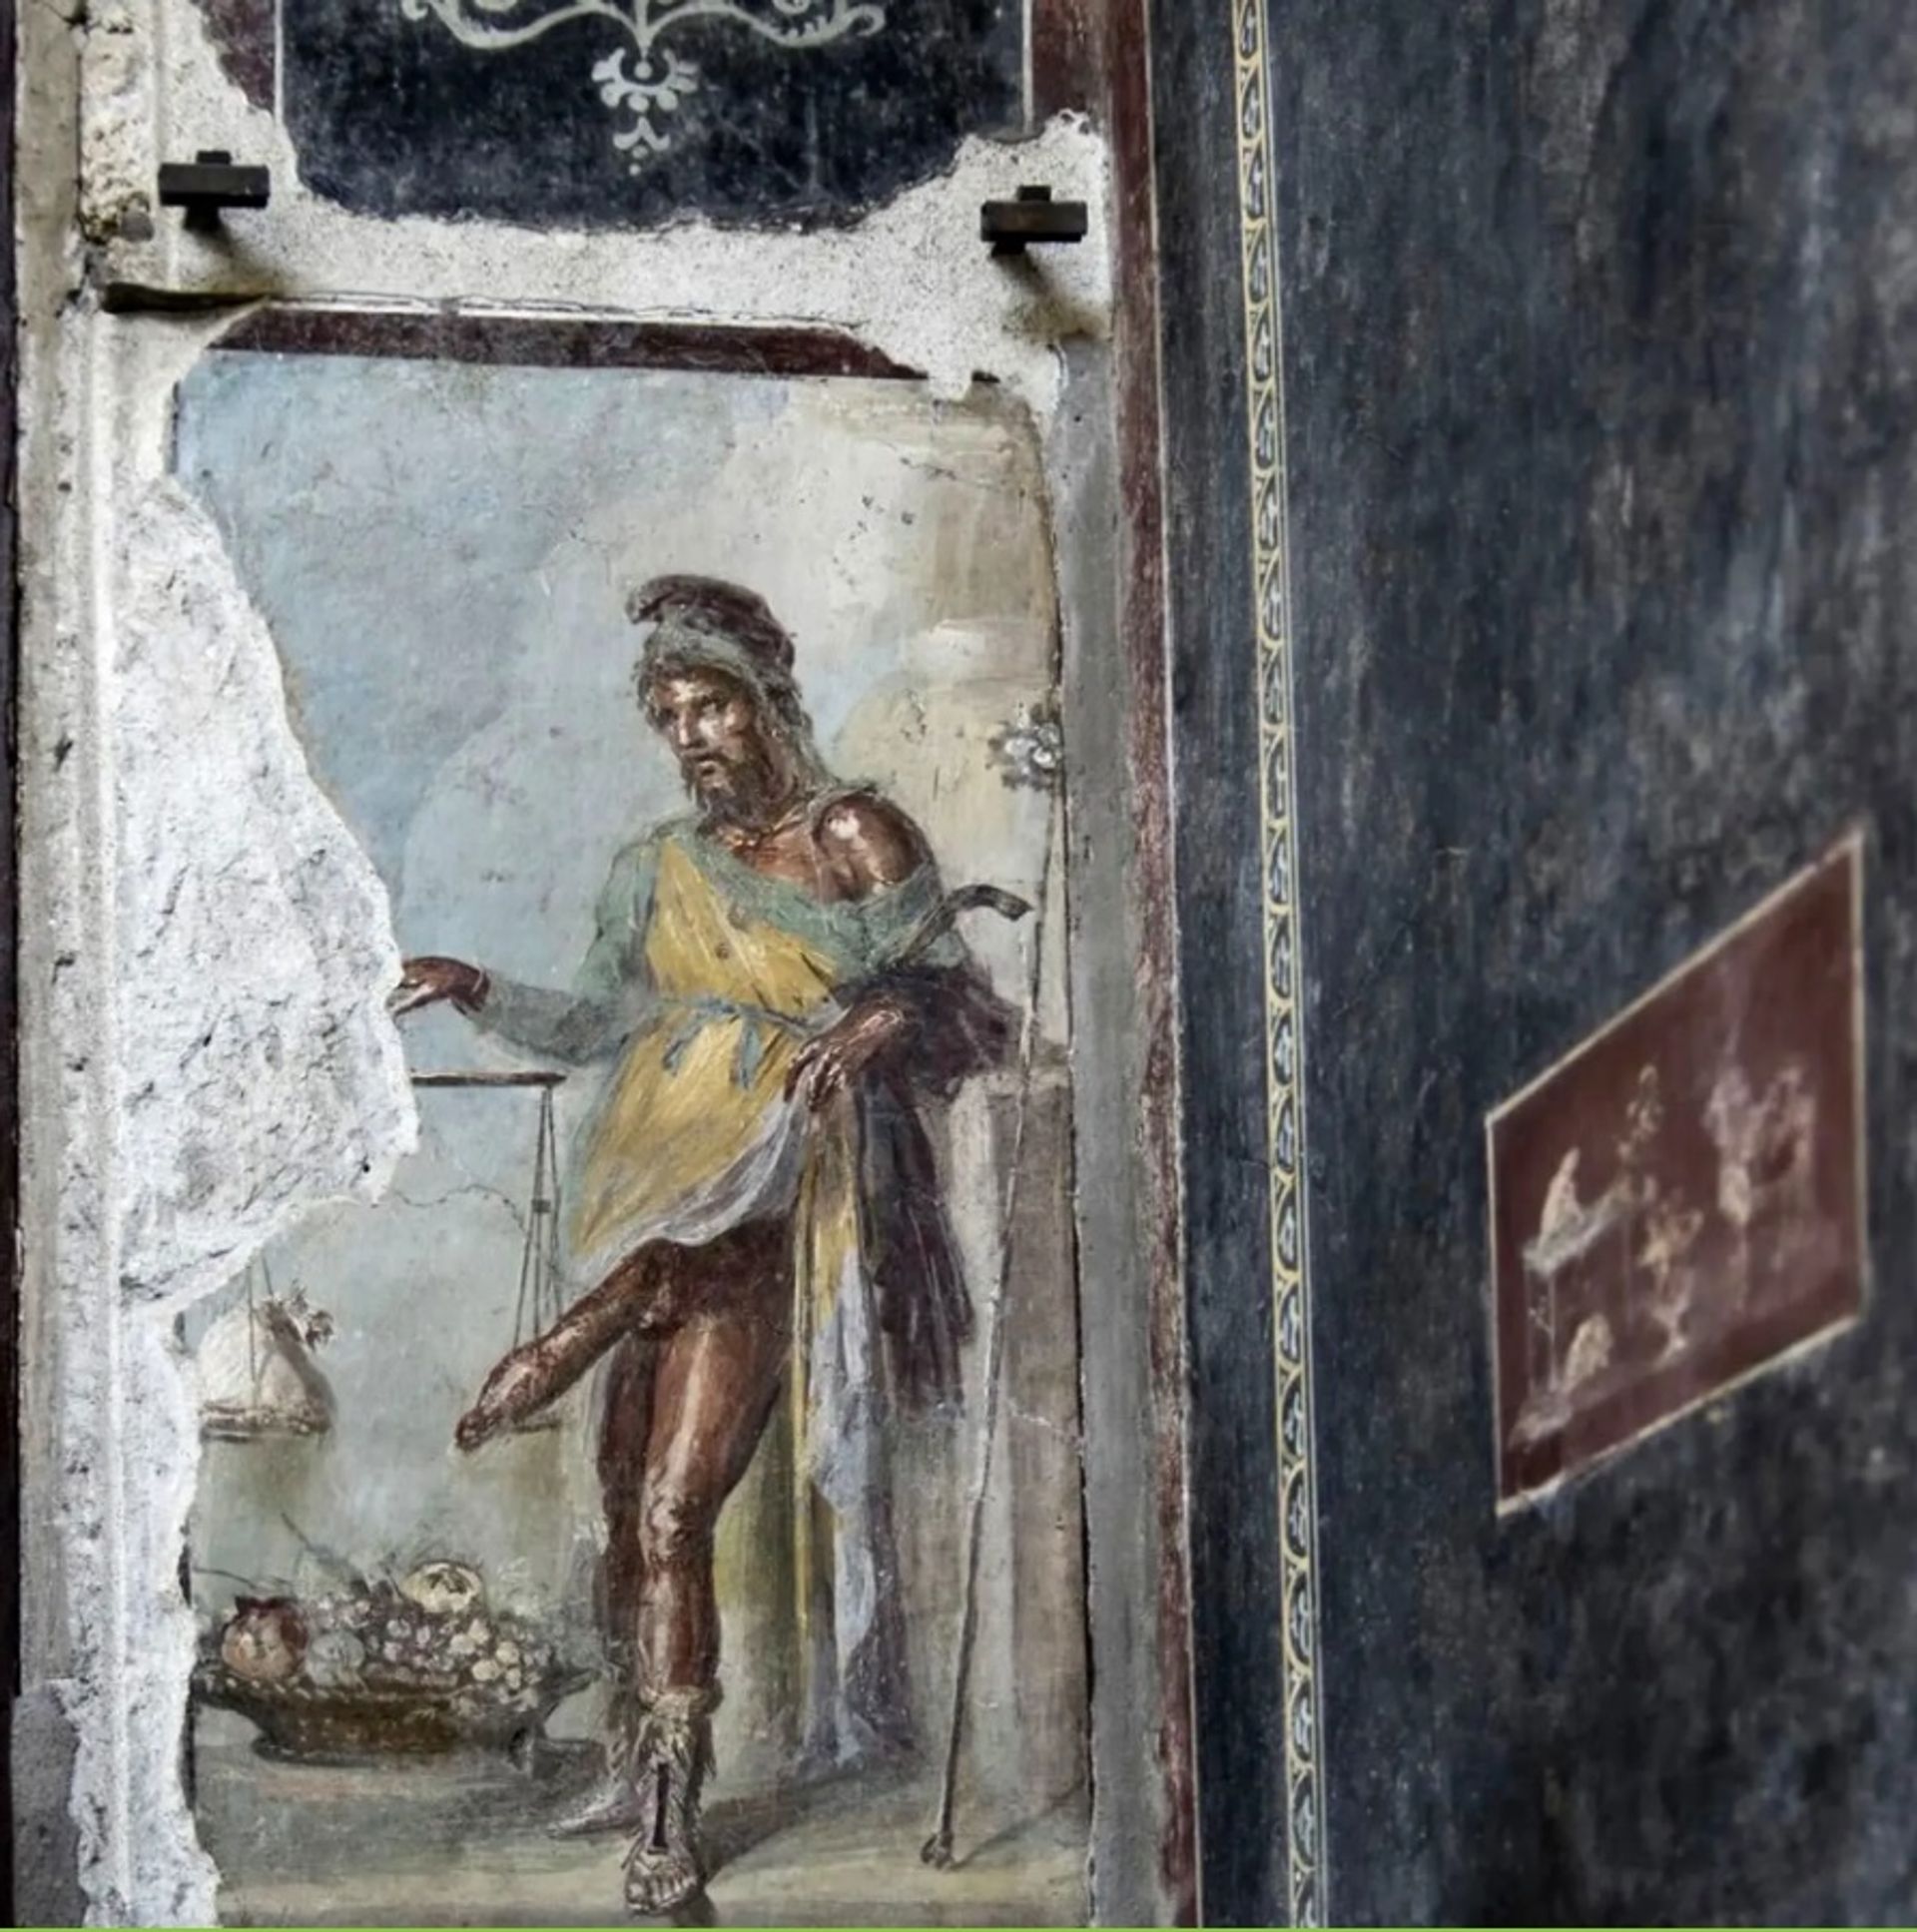 פריאפוס, אל הפריון, נחשב גם כמרחיק של הרוע

באדיבות Pompeii Parco Archeologico באמצעות אינסטגרם